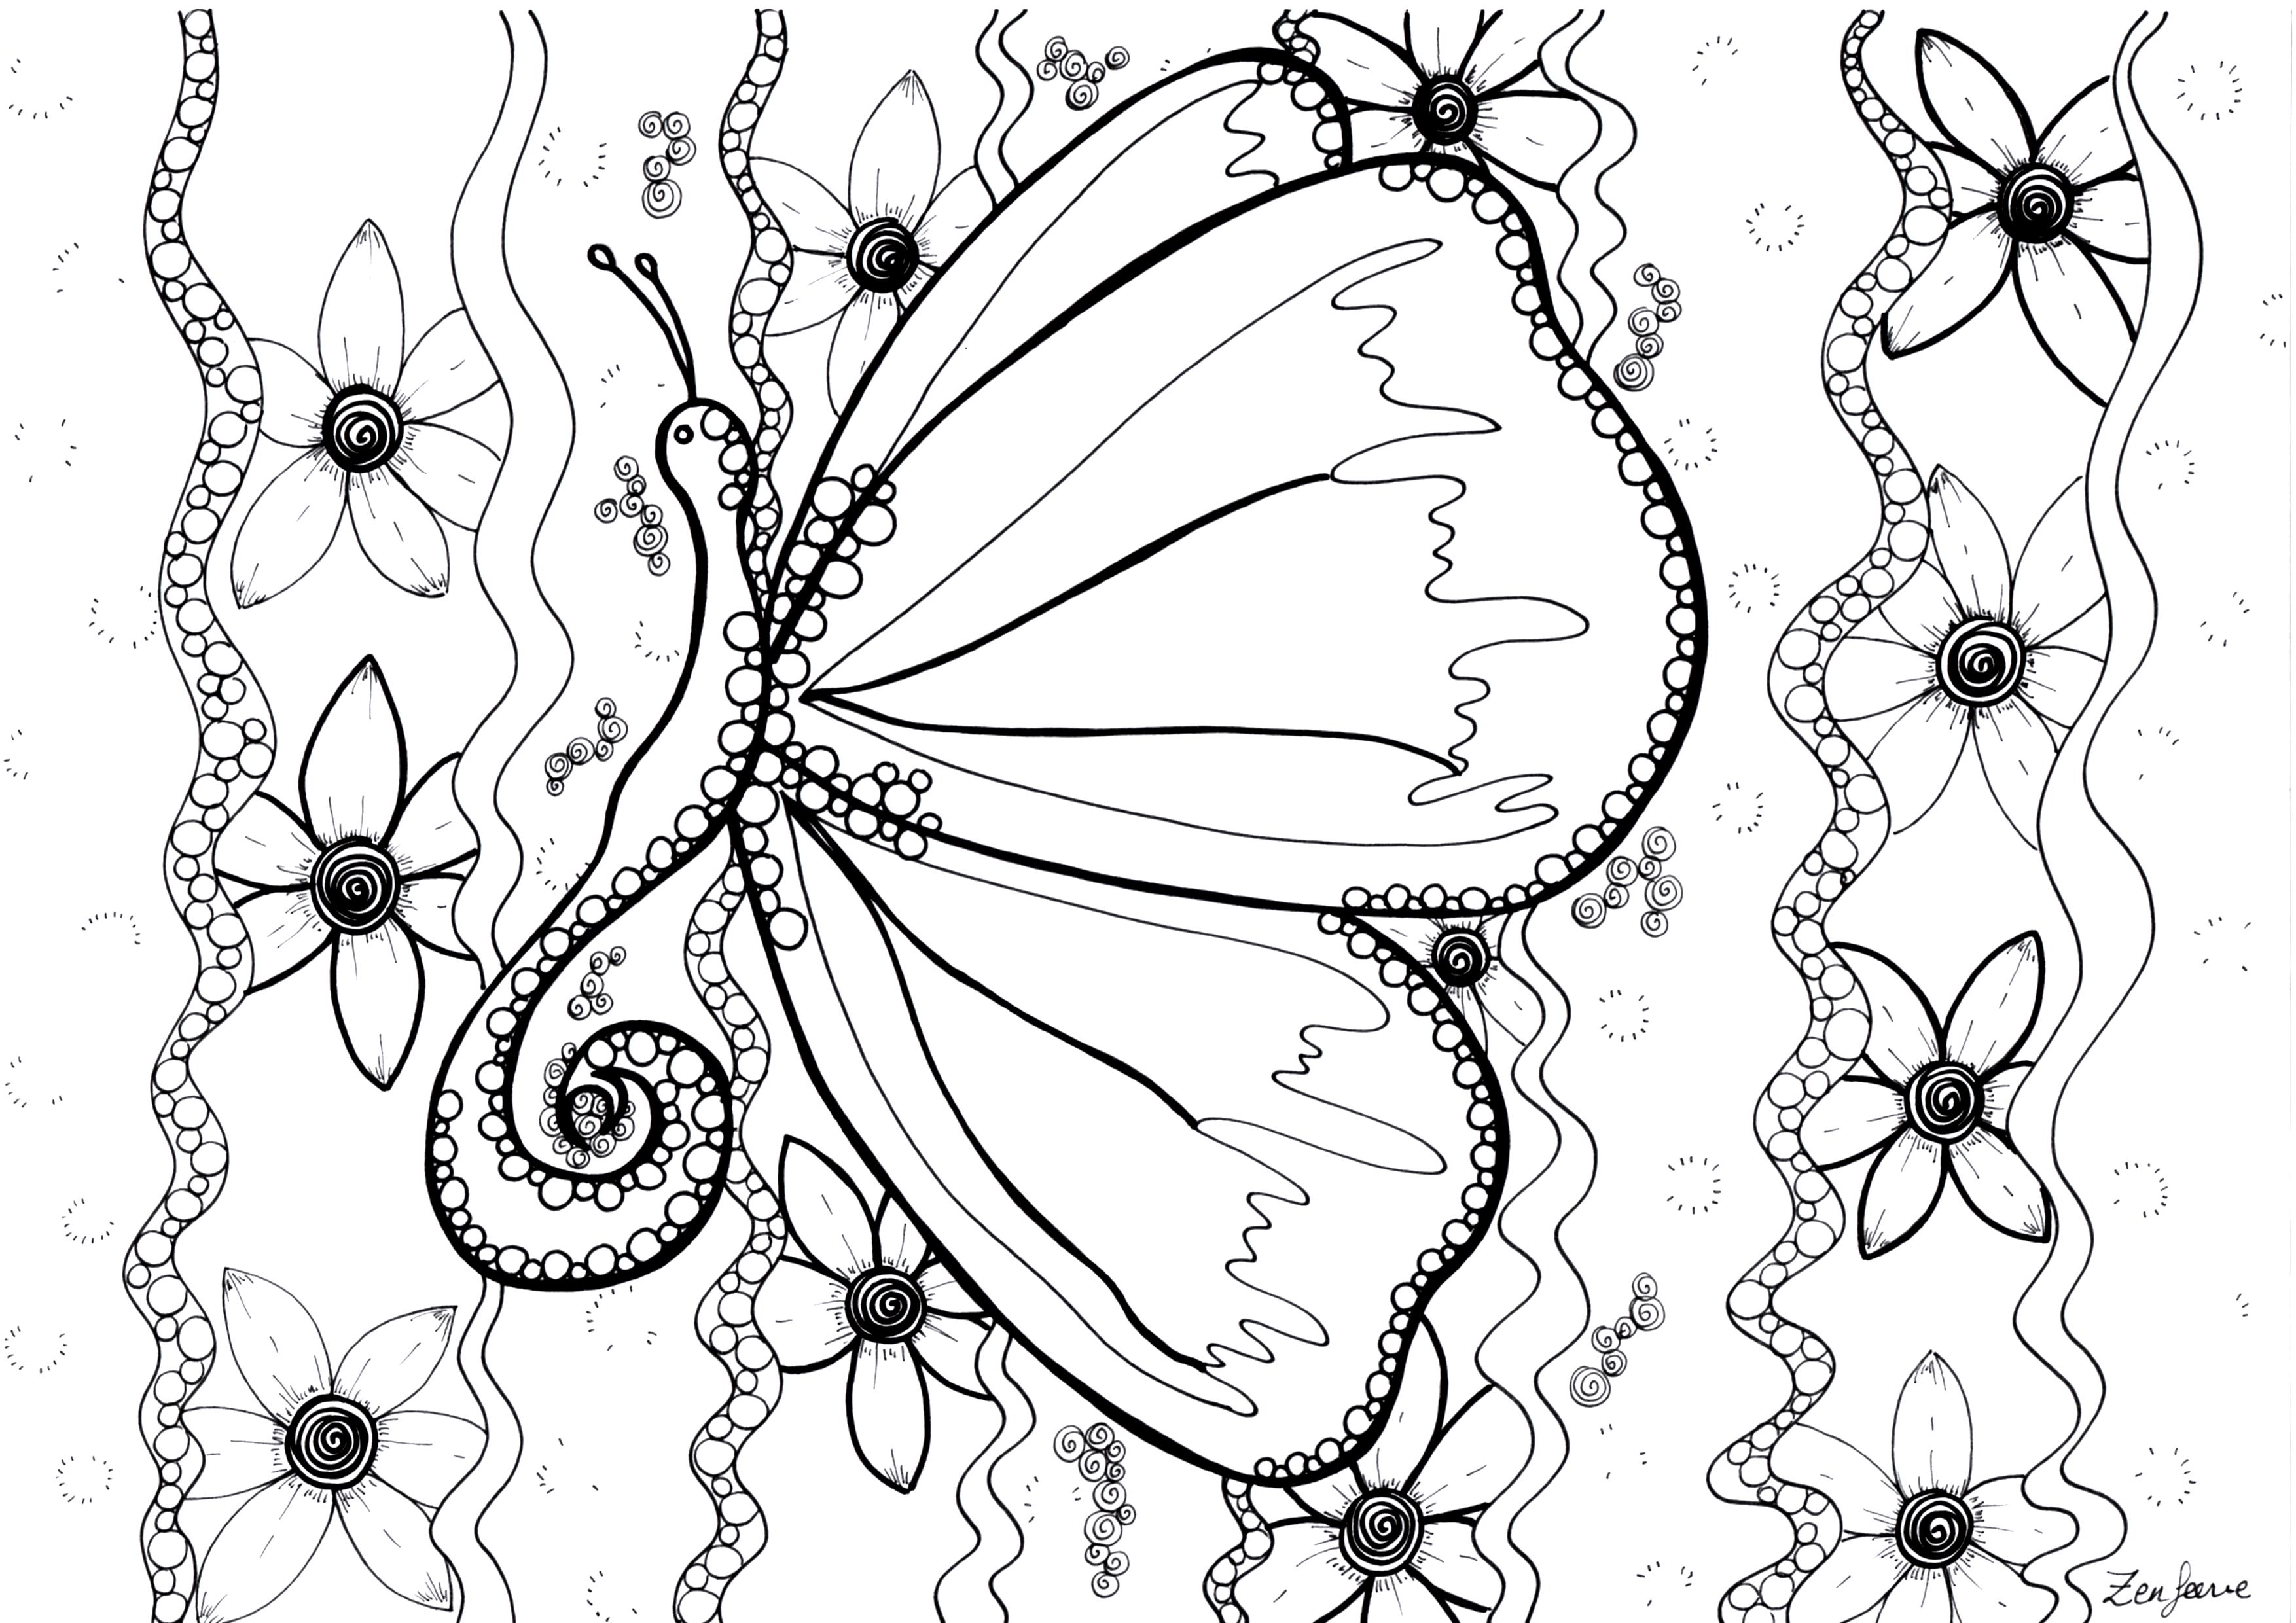 Desenhos simples grátis para colorir de Zentangle